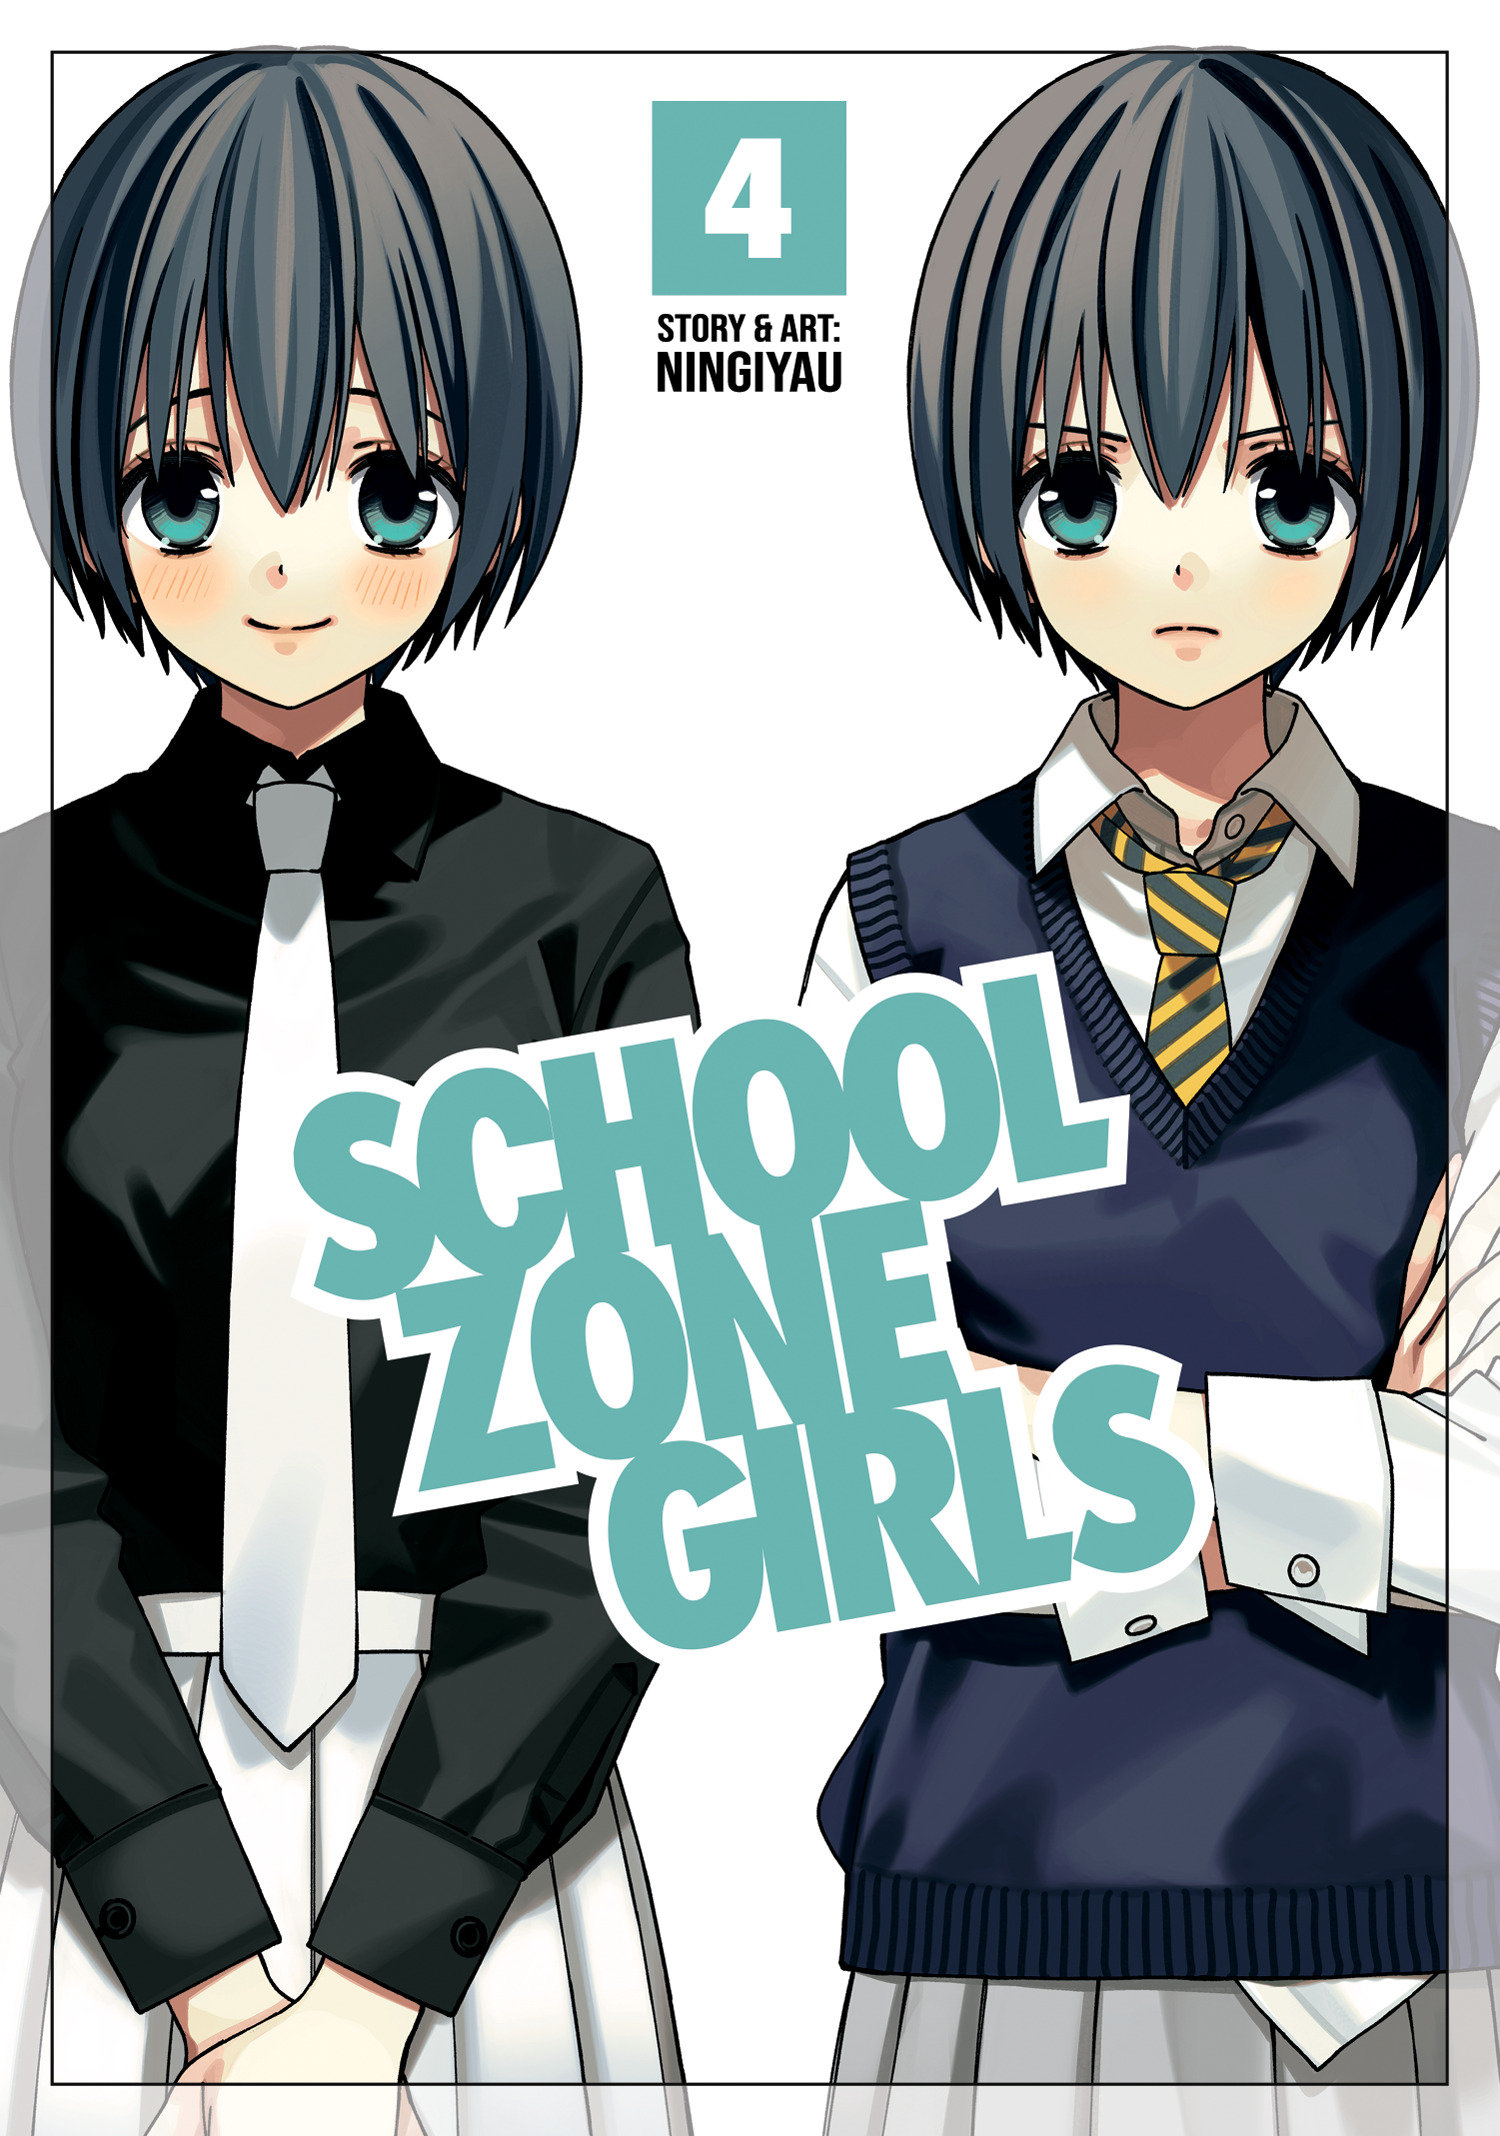 School Zone Girls Manga Volume 4